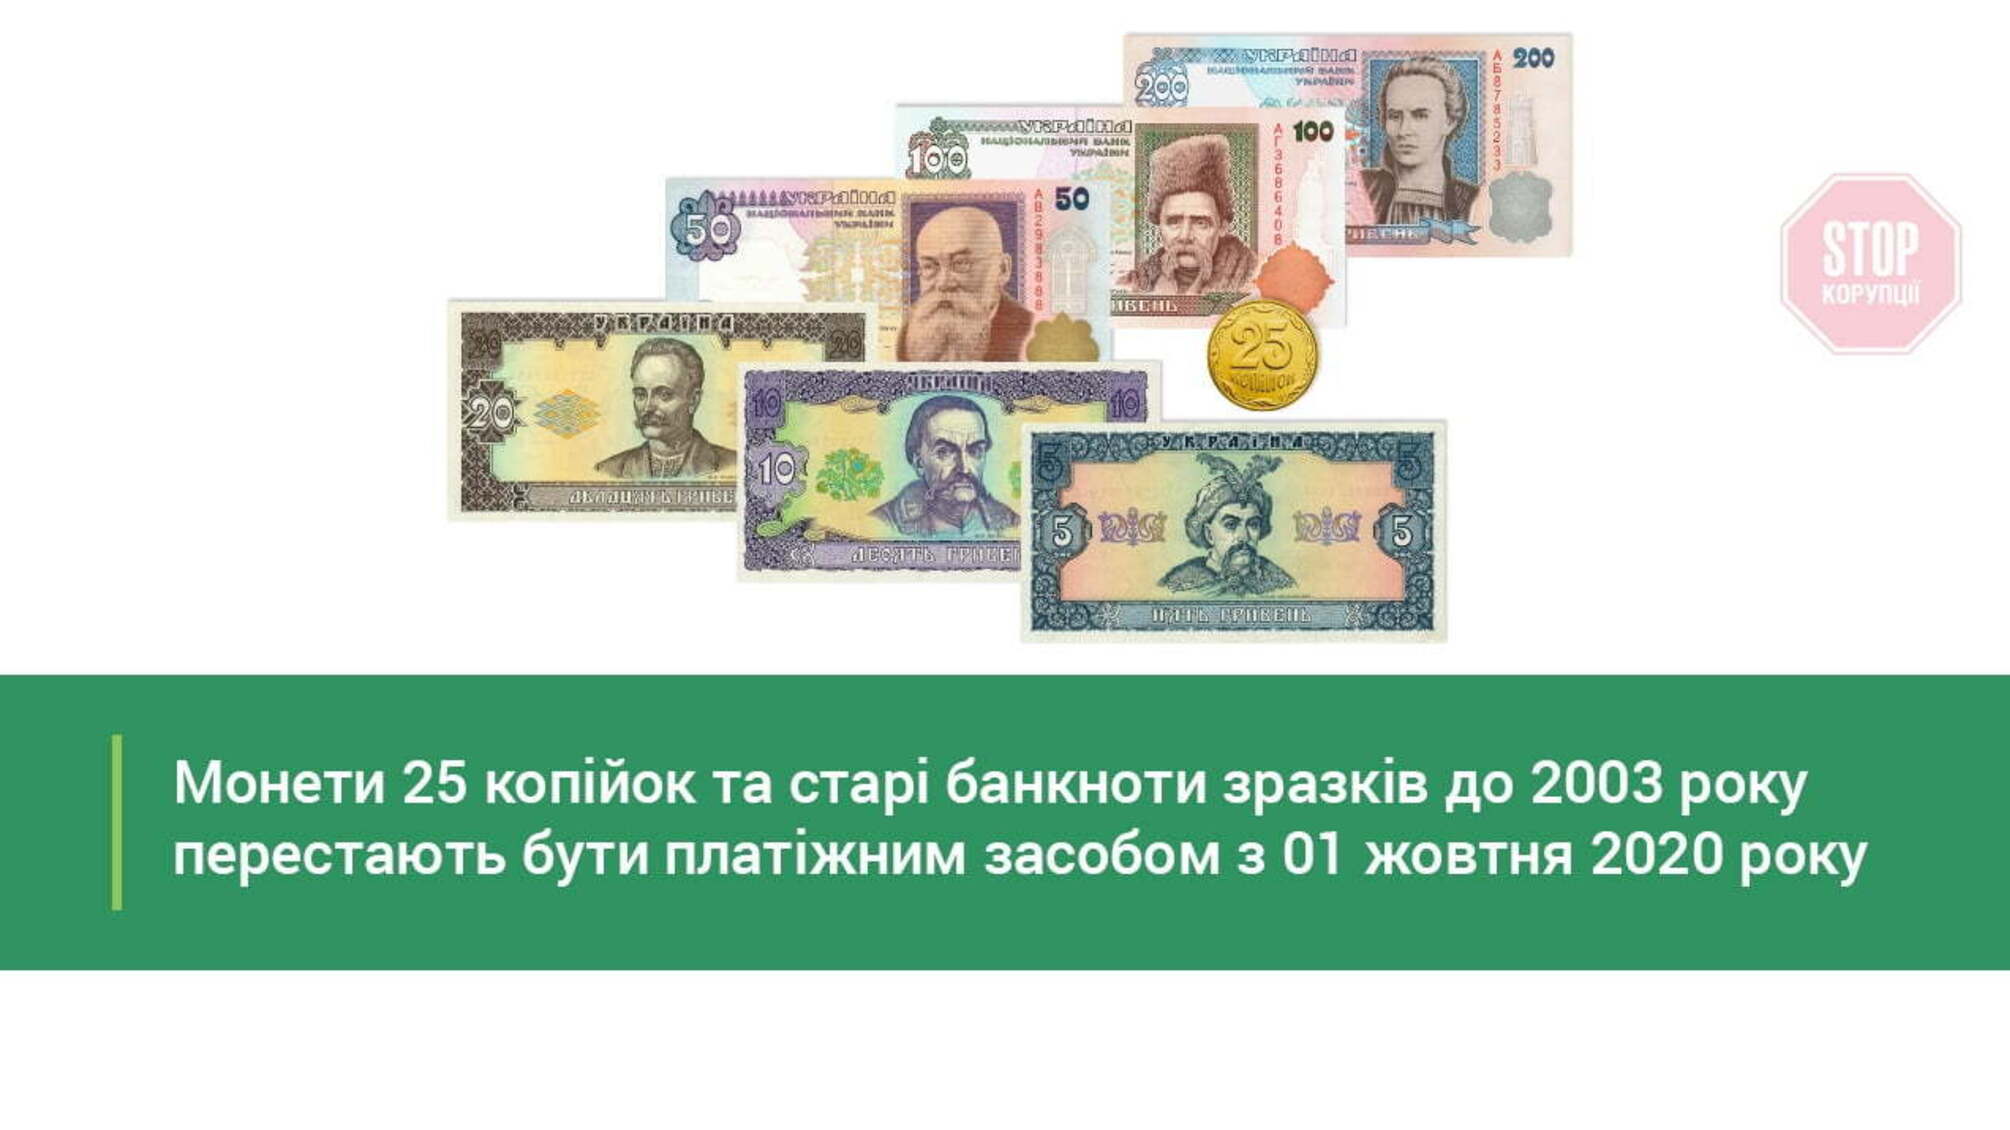 Сьогодні останній день, коли в Україні можна розплатитися старими банкнотами і монетами по 25 копійок